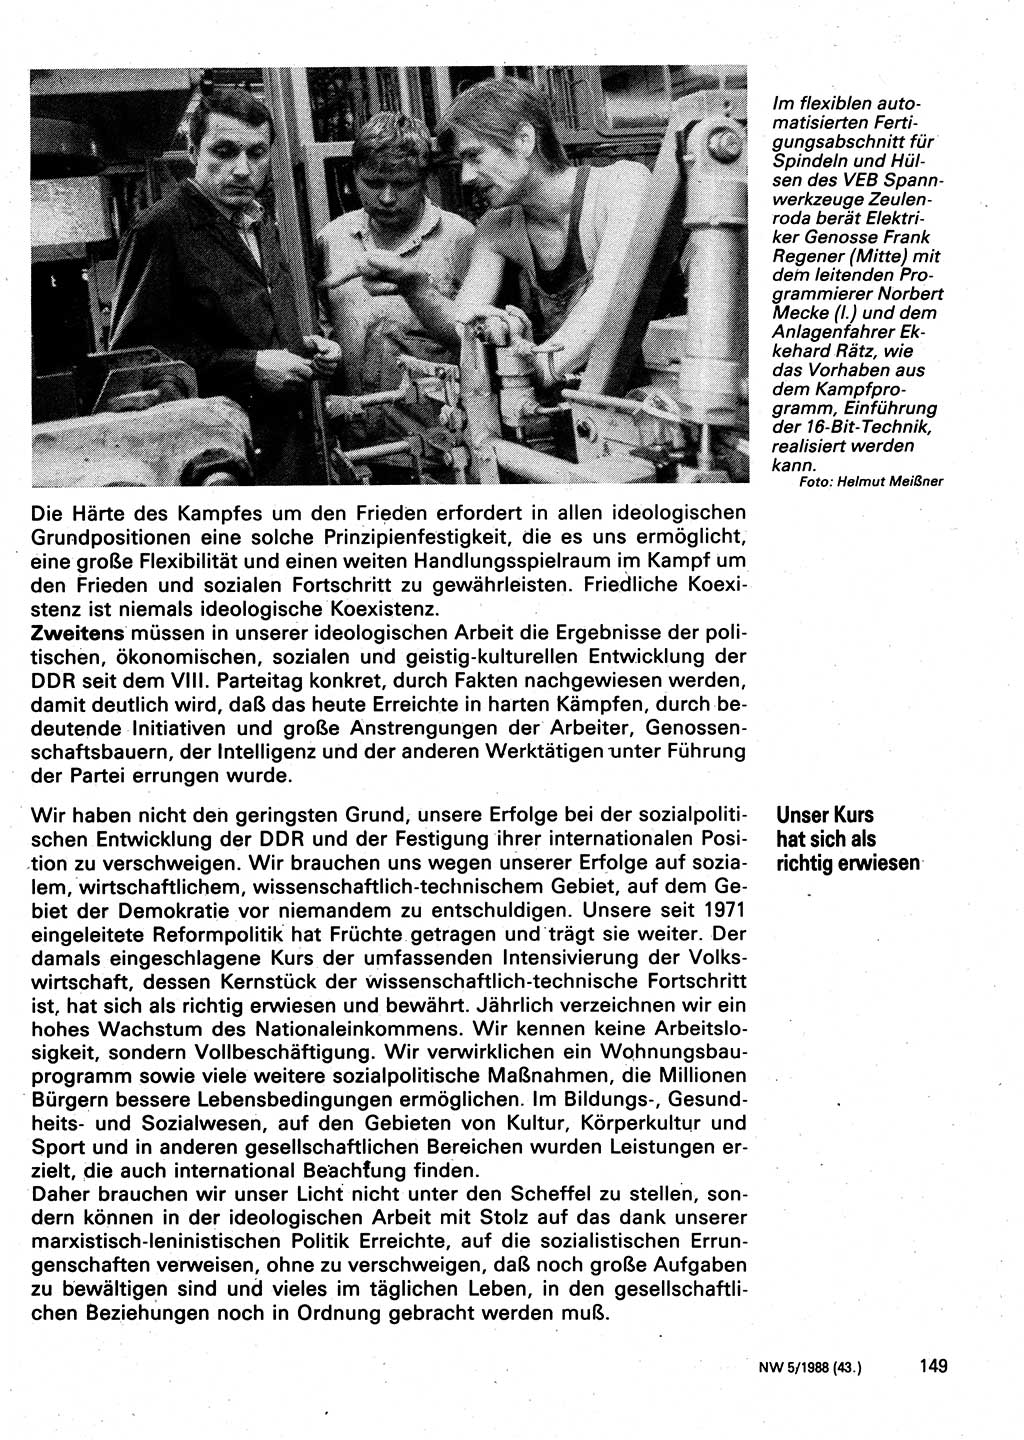 Neuer Weg (NW), Organ des Zentralkomitees (ZK) der SED (Sozialistische Einheitspartei Deutschlands) für Fragen des Parteilebens, 43. Jahrgang [Deutsche Demokratische Republik (DDR)] 1988, Seite 149 (NW ZK SED DDR 1988, S. 149)